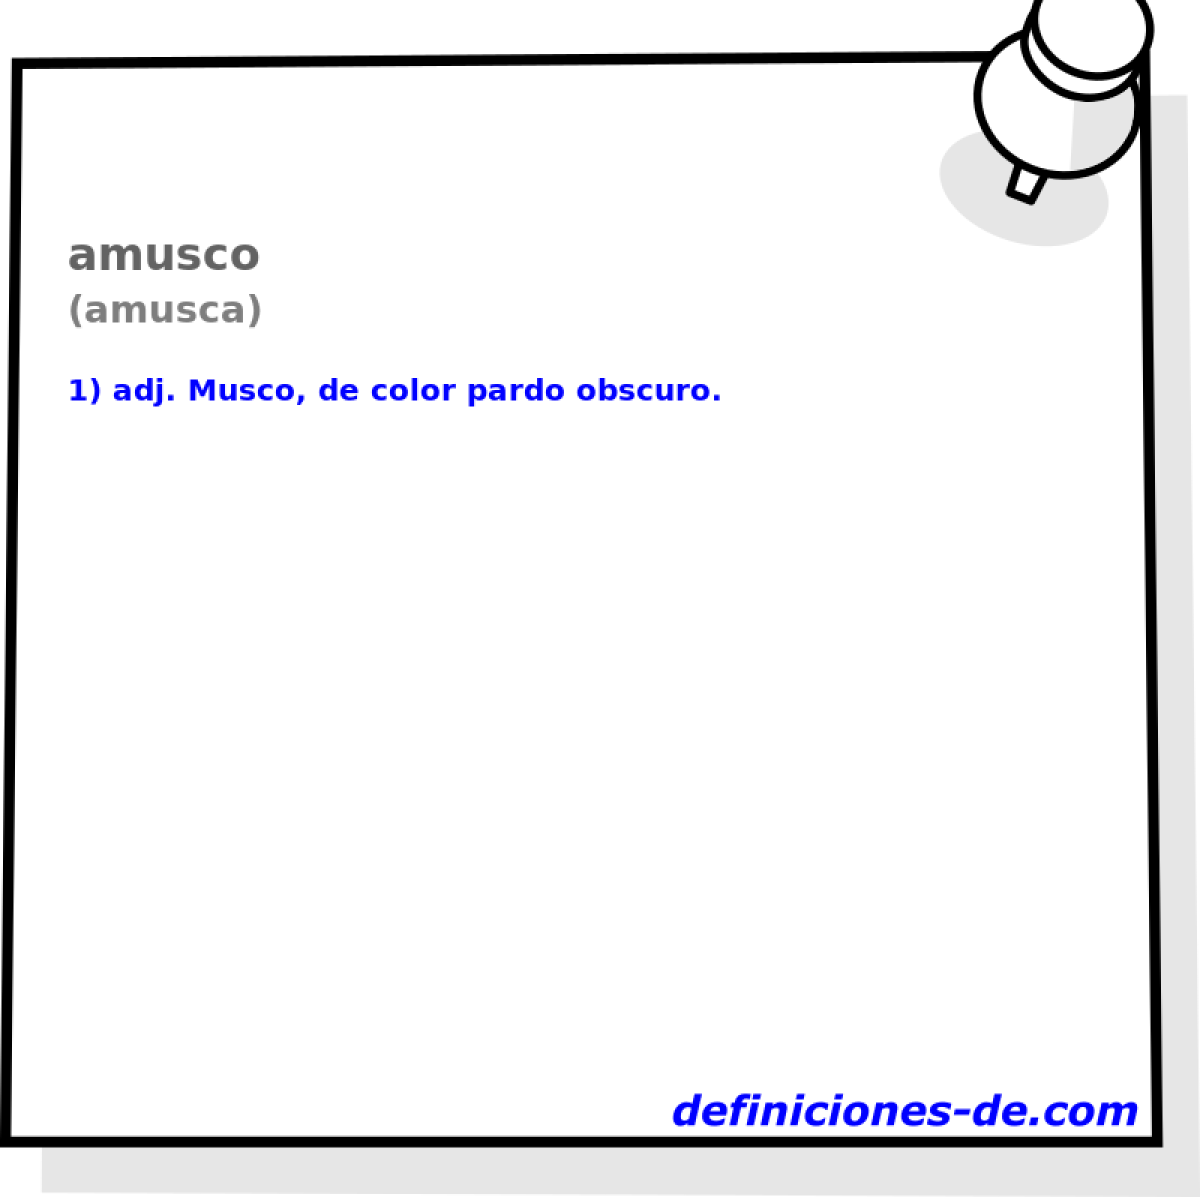 amusco (amusca)